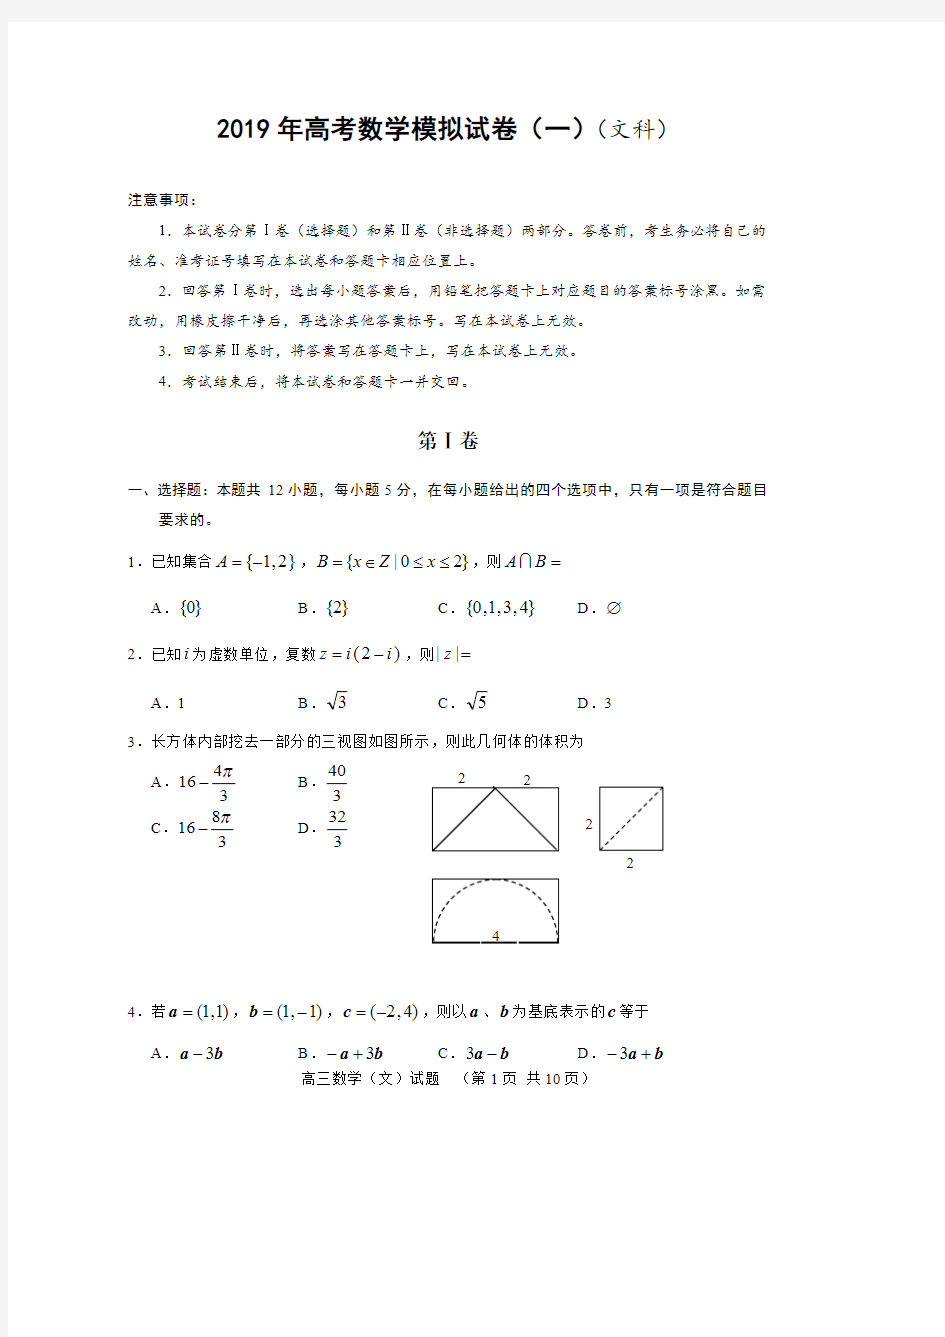 2019高考数学模拟试卷(一)(文科)(最新整理)